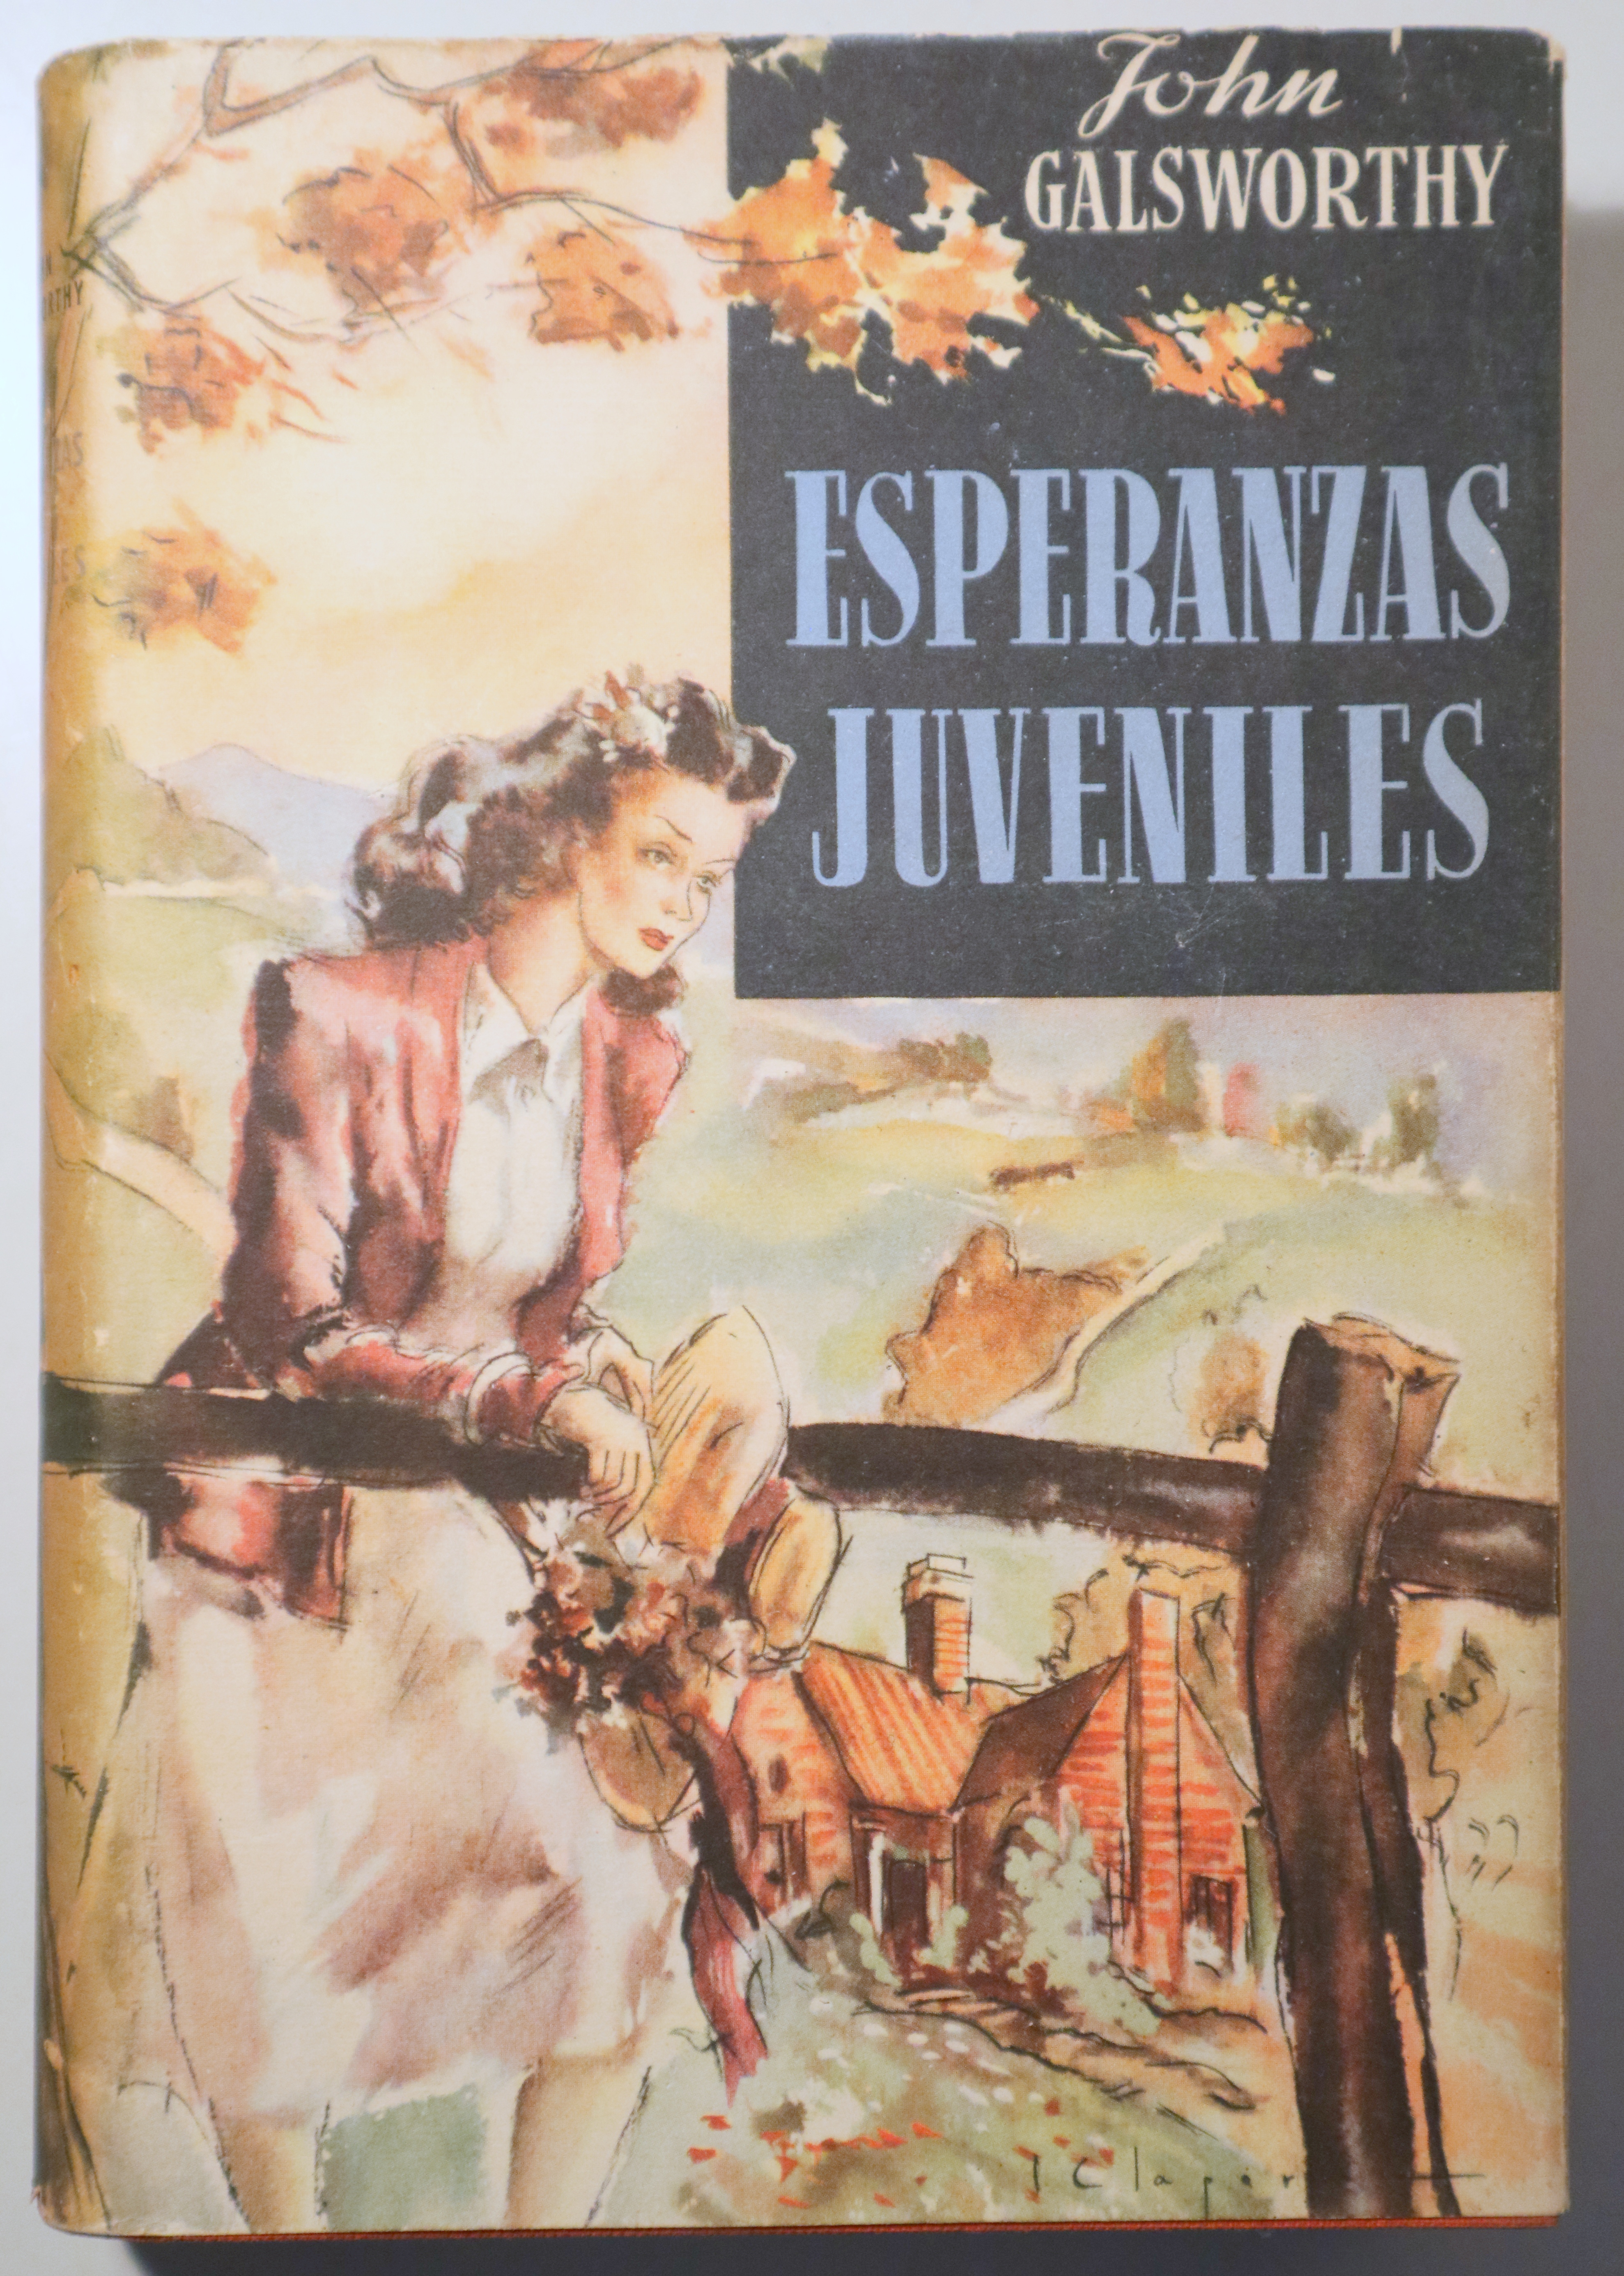 ESPERANZAS JUVENILES - Barcelona 1945 - 1ª edición en español